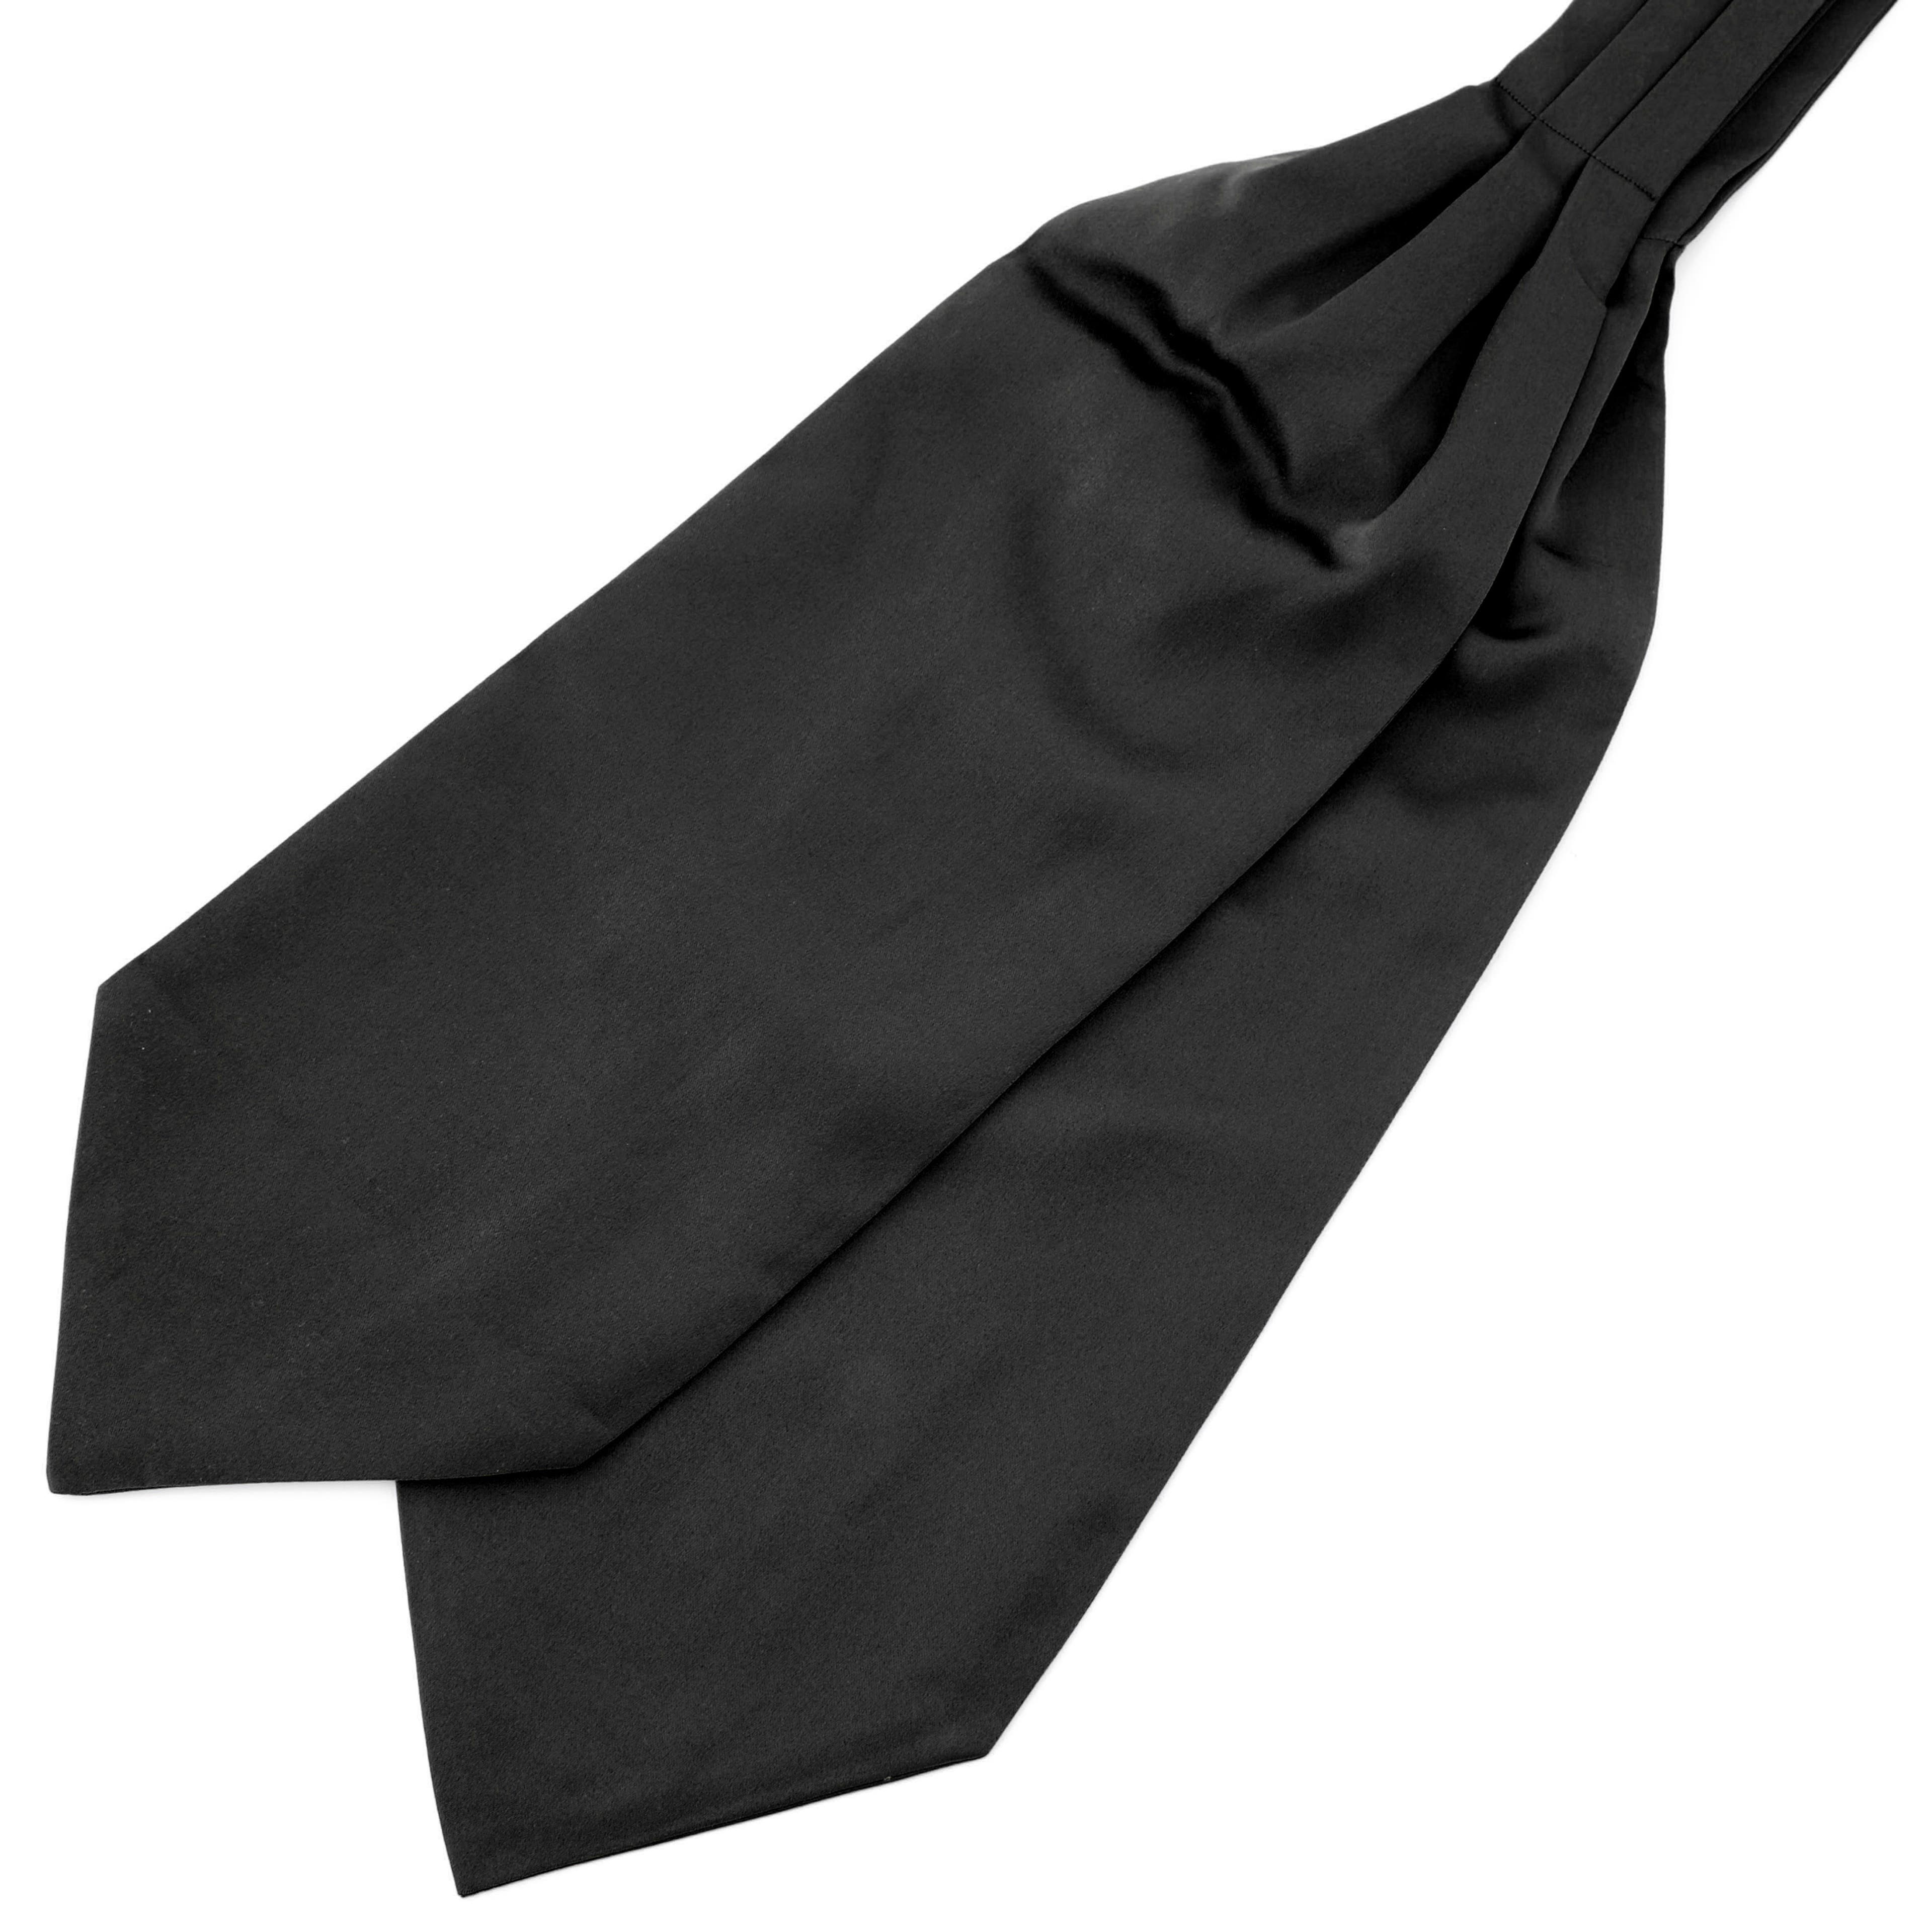 Cravate unie noire